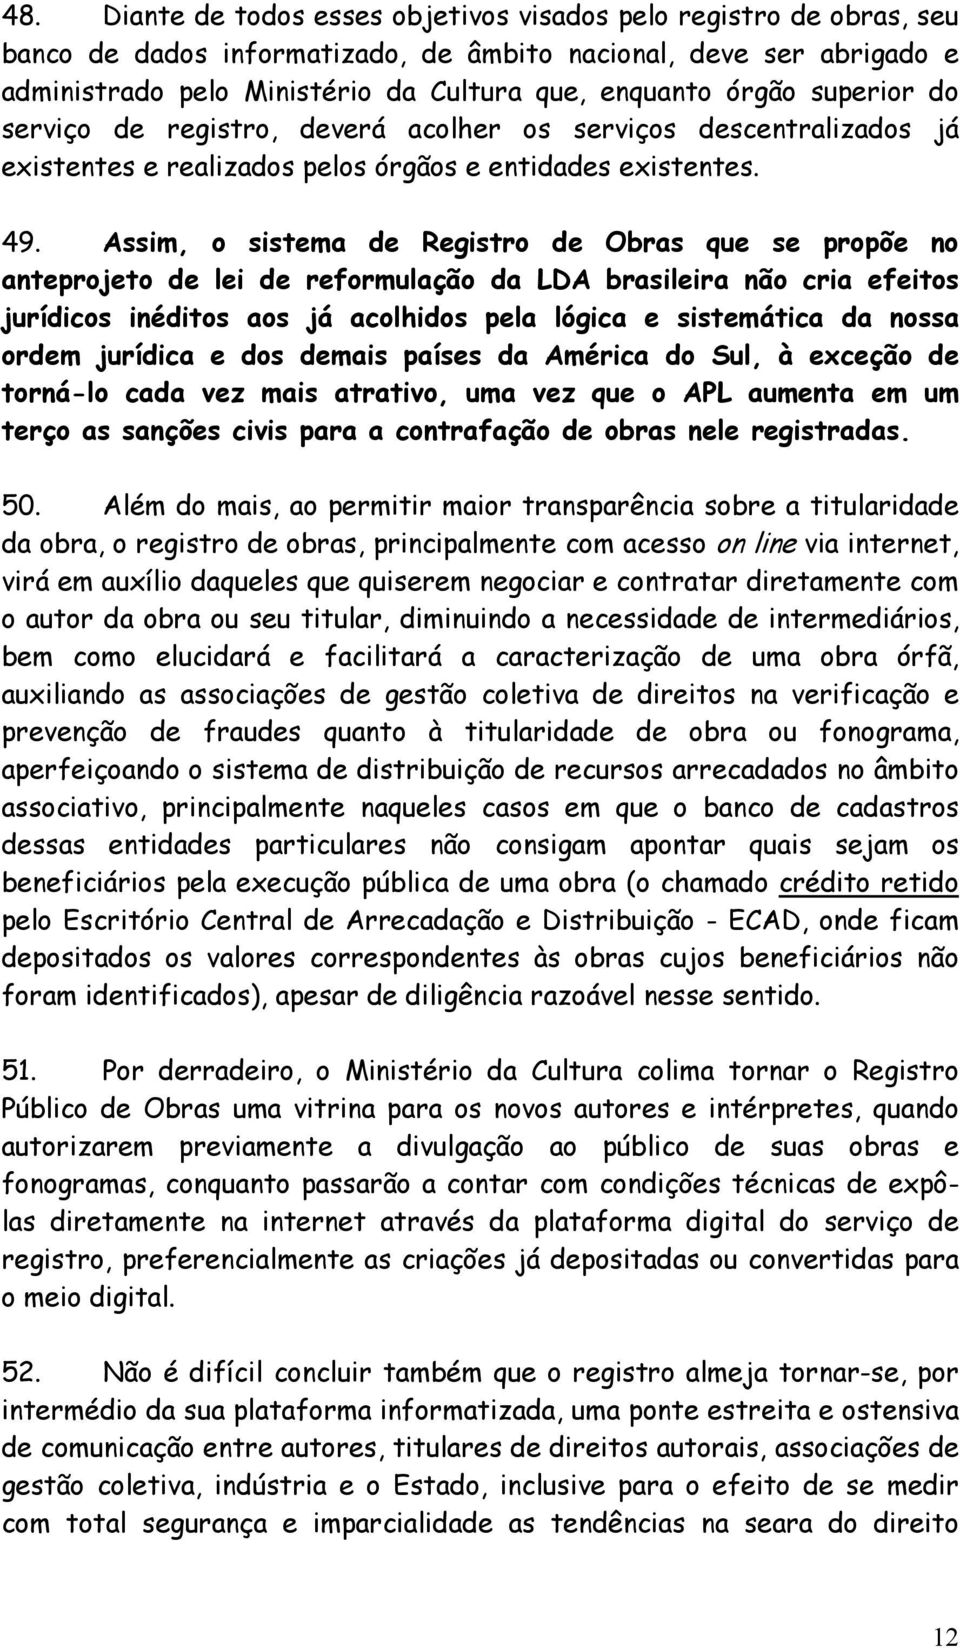 Assim, o sistema de Registro de Obras que se propõe no anteprojeto de lei de reformulação da LDA brasileira não cria efeitos jurídicos inéditos aos já acolhidos pela lógica e sistemática da nossa